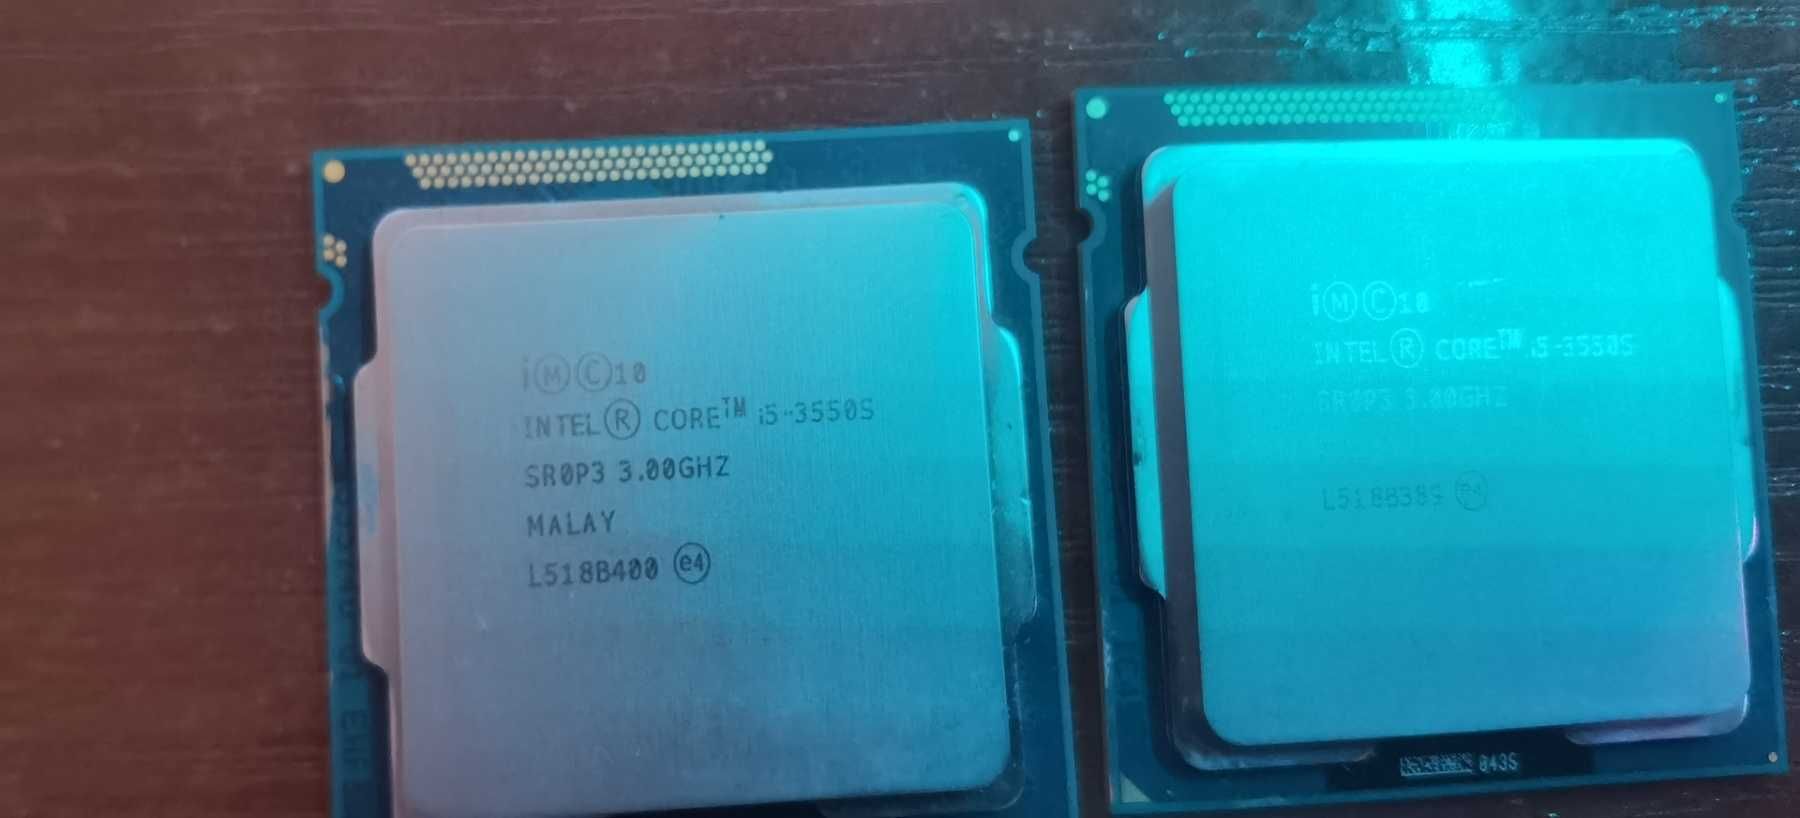 Процессор S1155 Intel Core I5-3550S энергоэфективный  65W